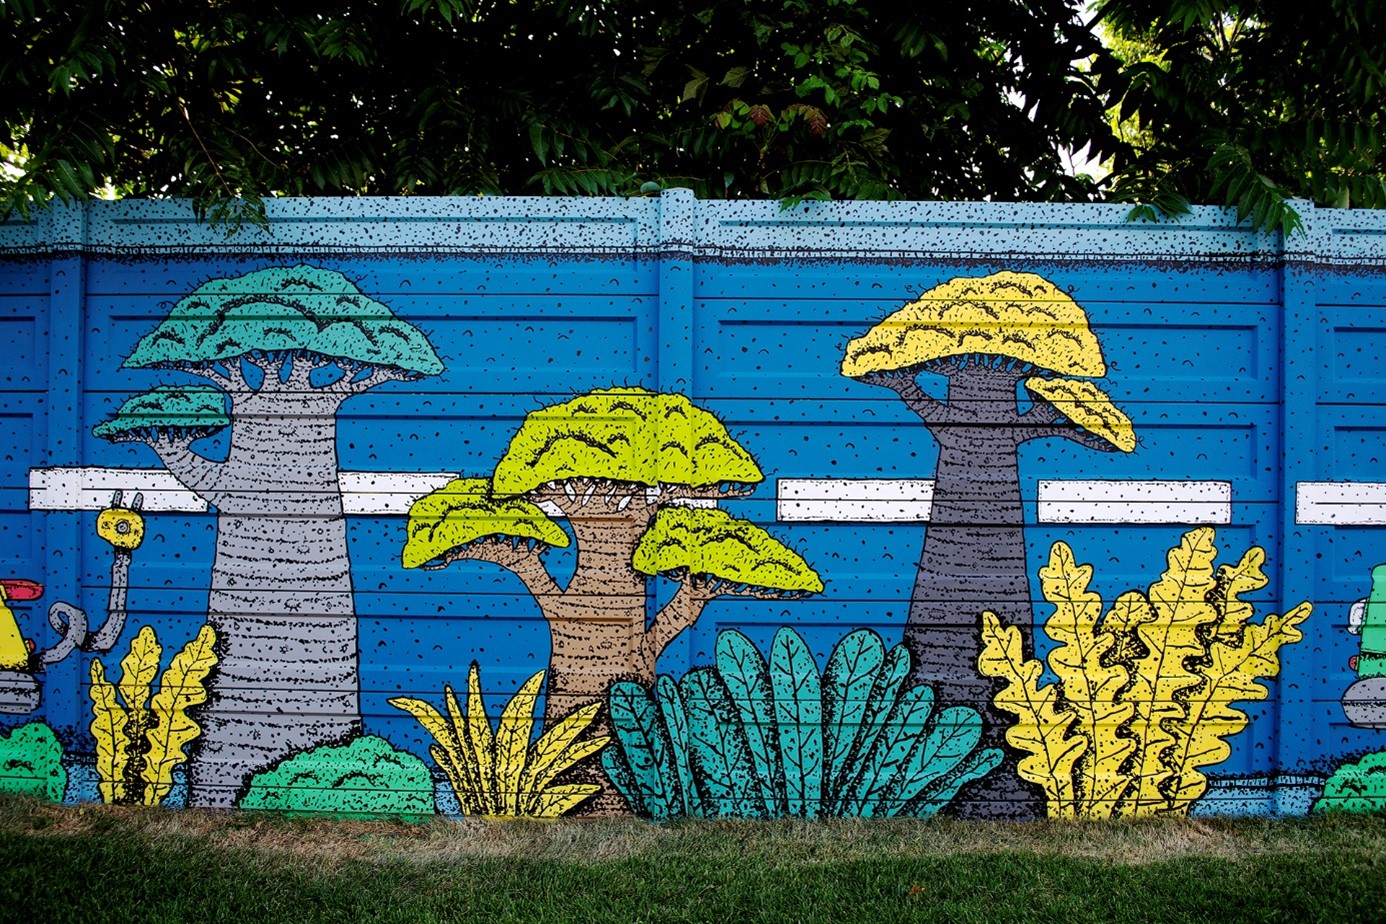 Vulcan Value Centre a inaugurat o pictură murală realizată de un artist urban, pe tema sustenabilității